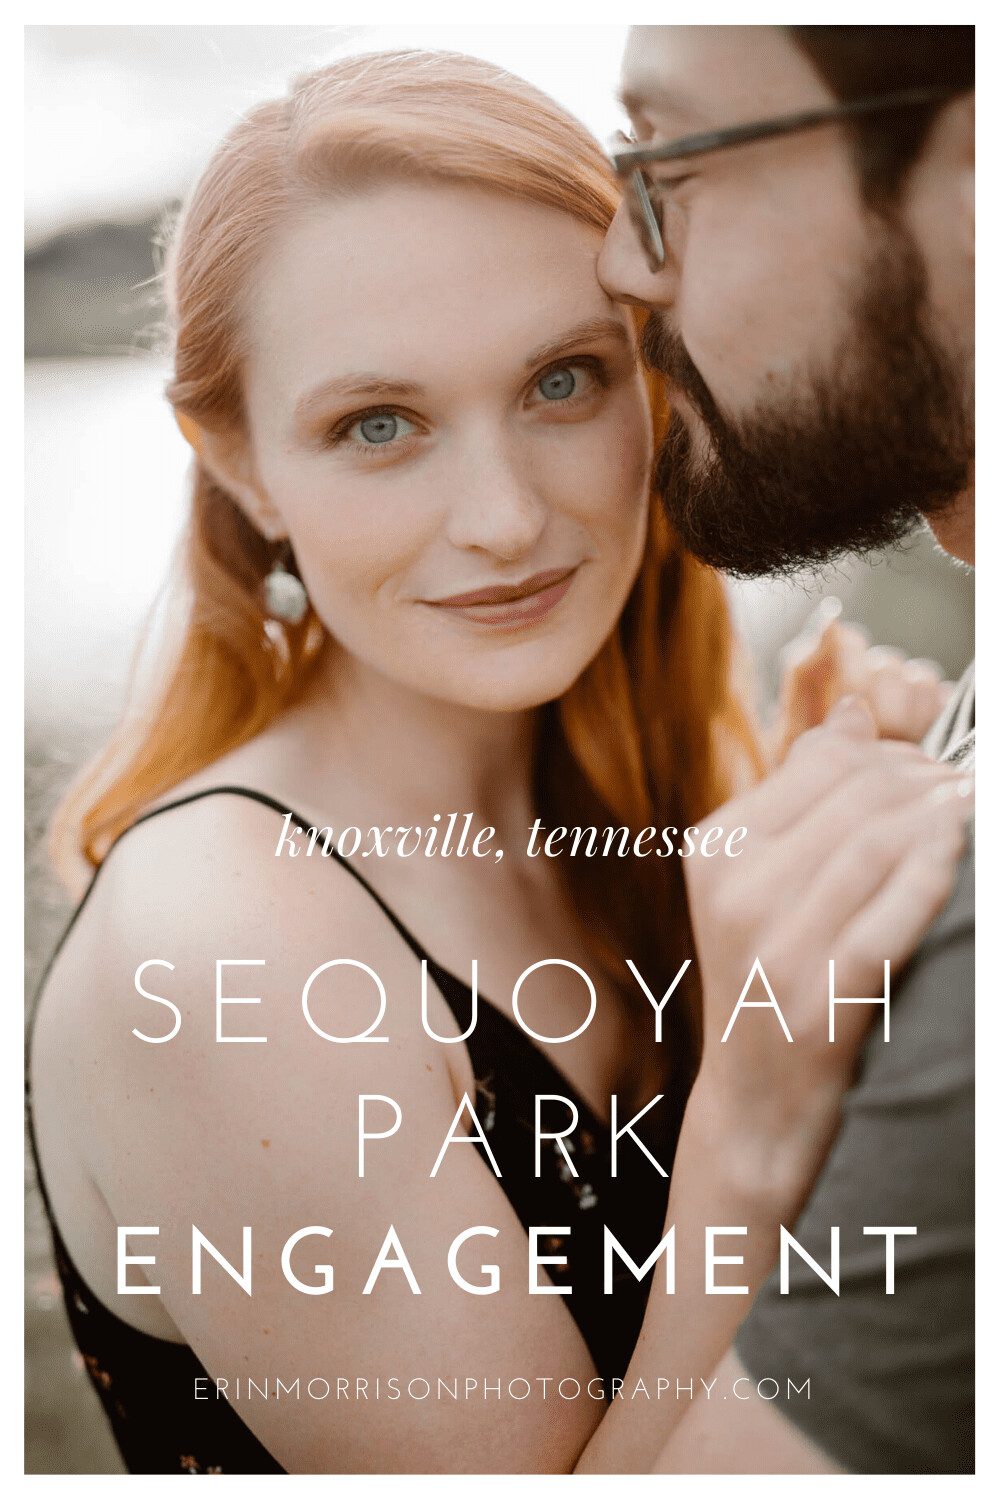 Sequoyah Park Engagement Session